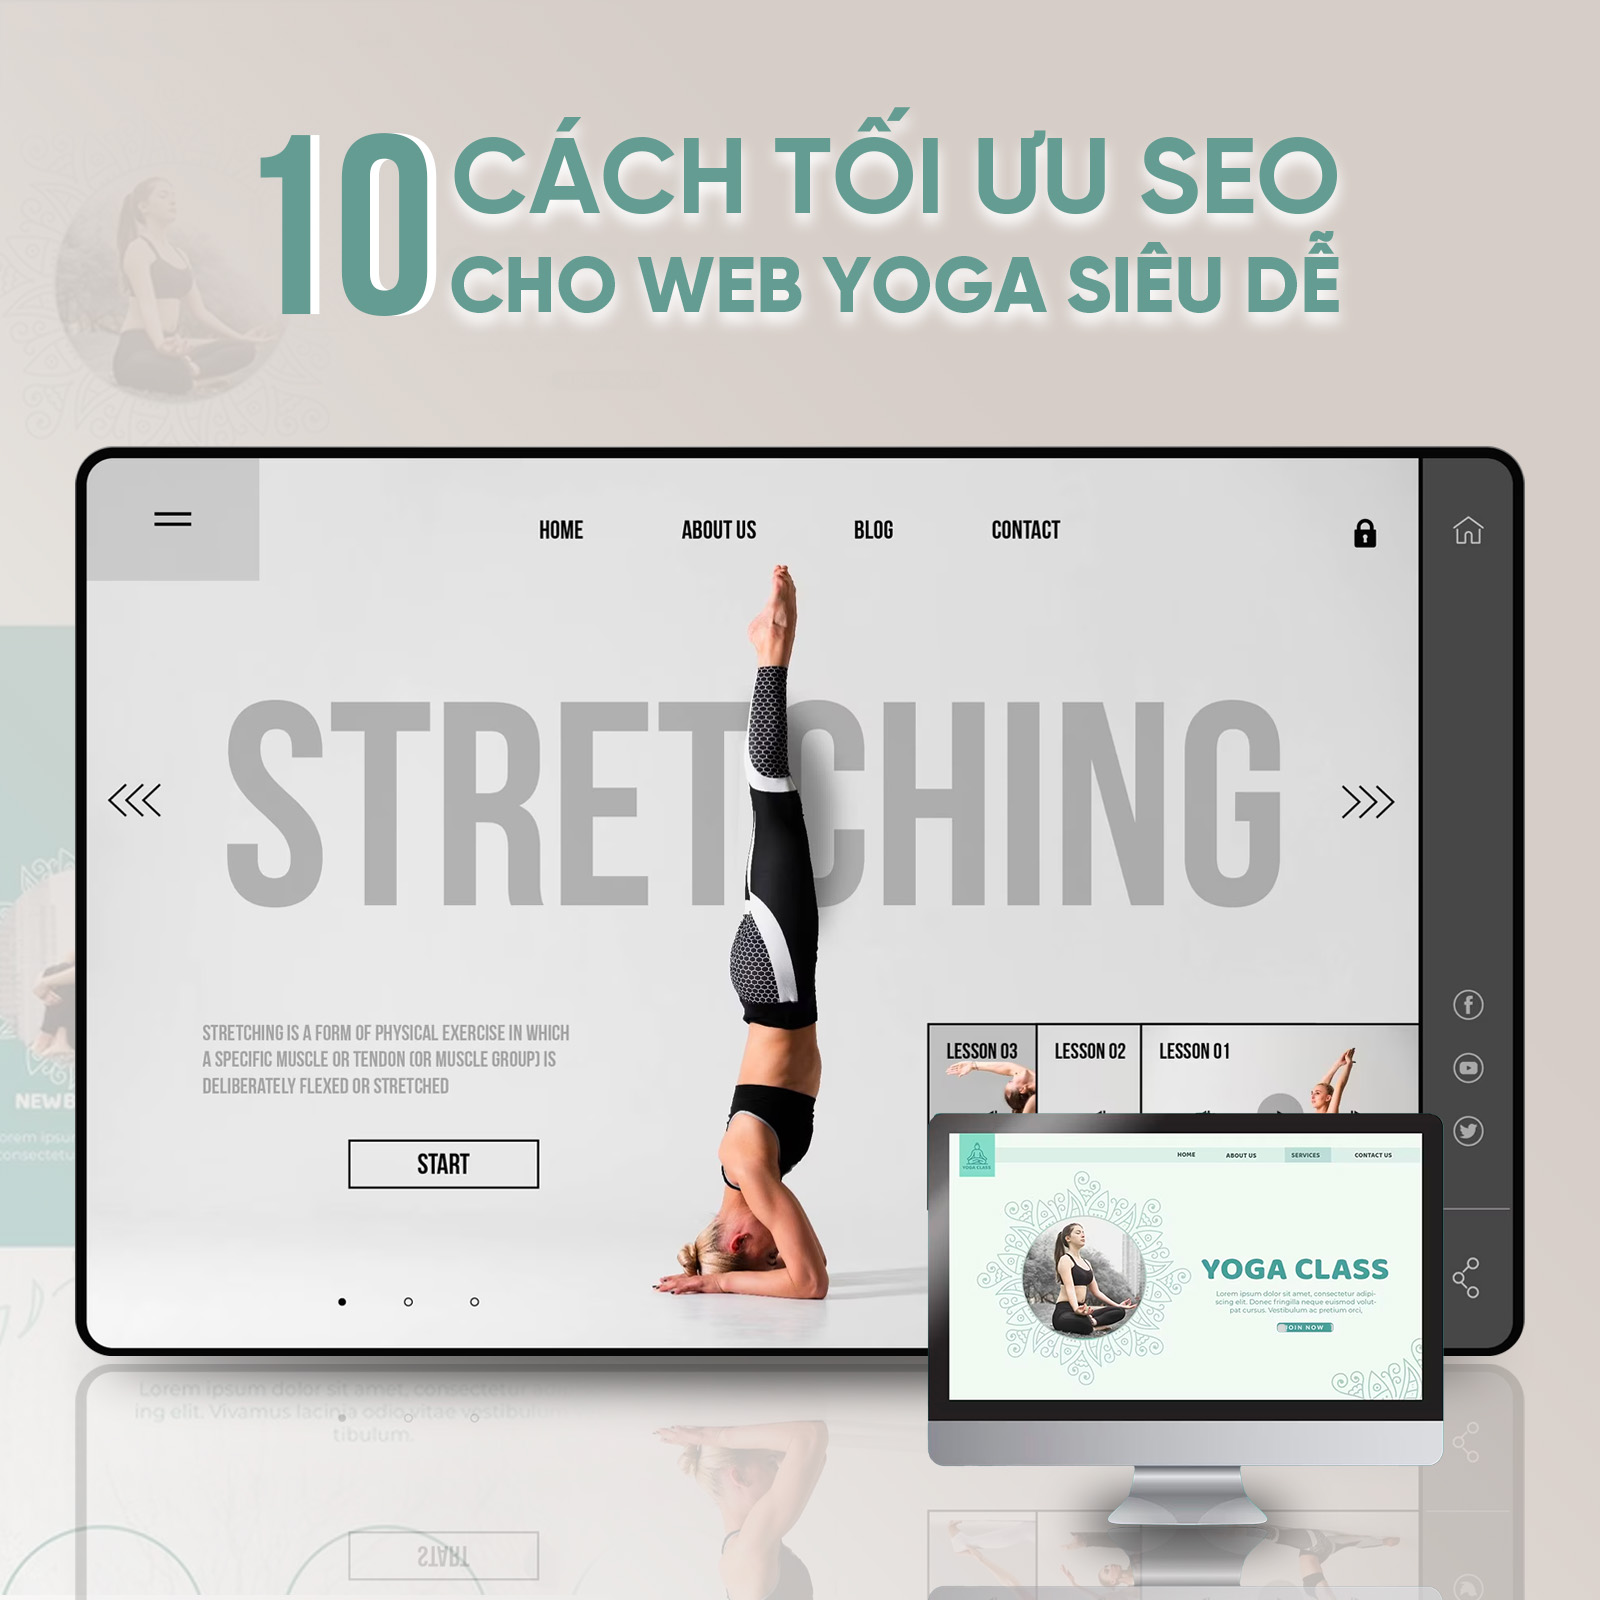 10 cách tối ưu SEO cho web yoga siêu dễ